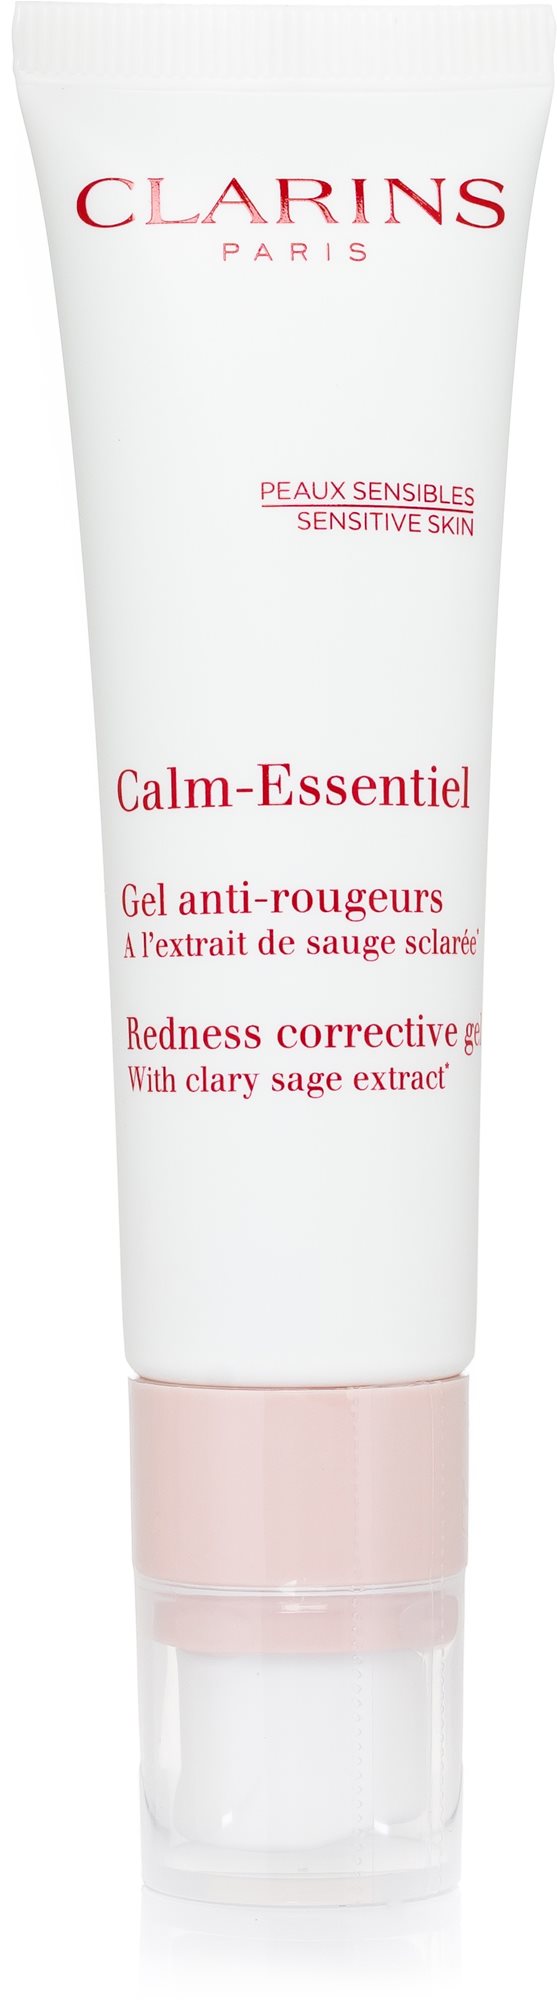 CLARINS Calm-Essentiel Redness Corrective Gél 30 ml